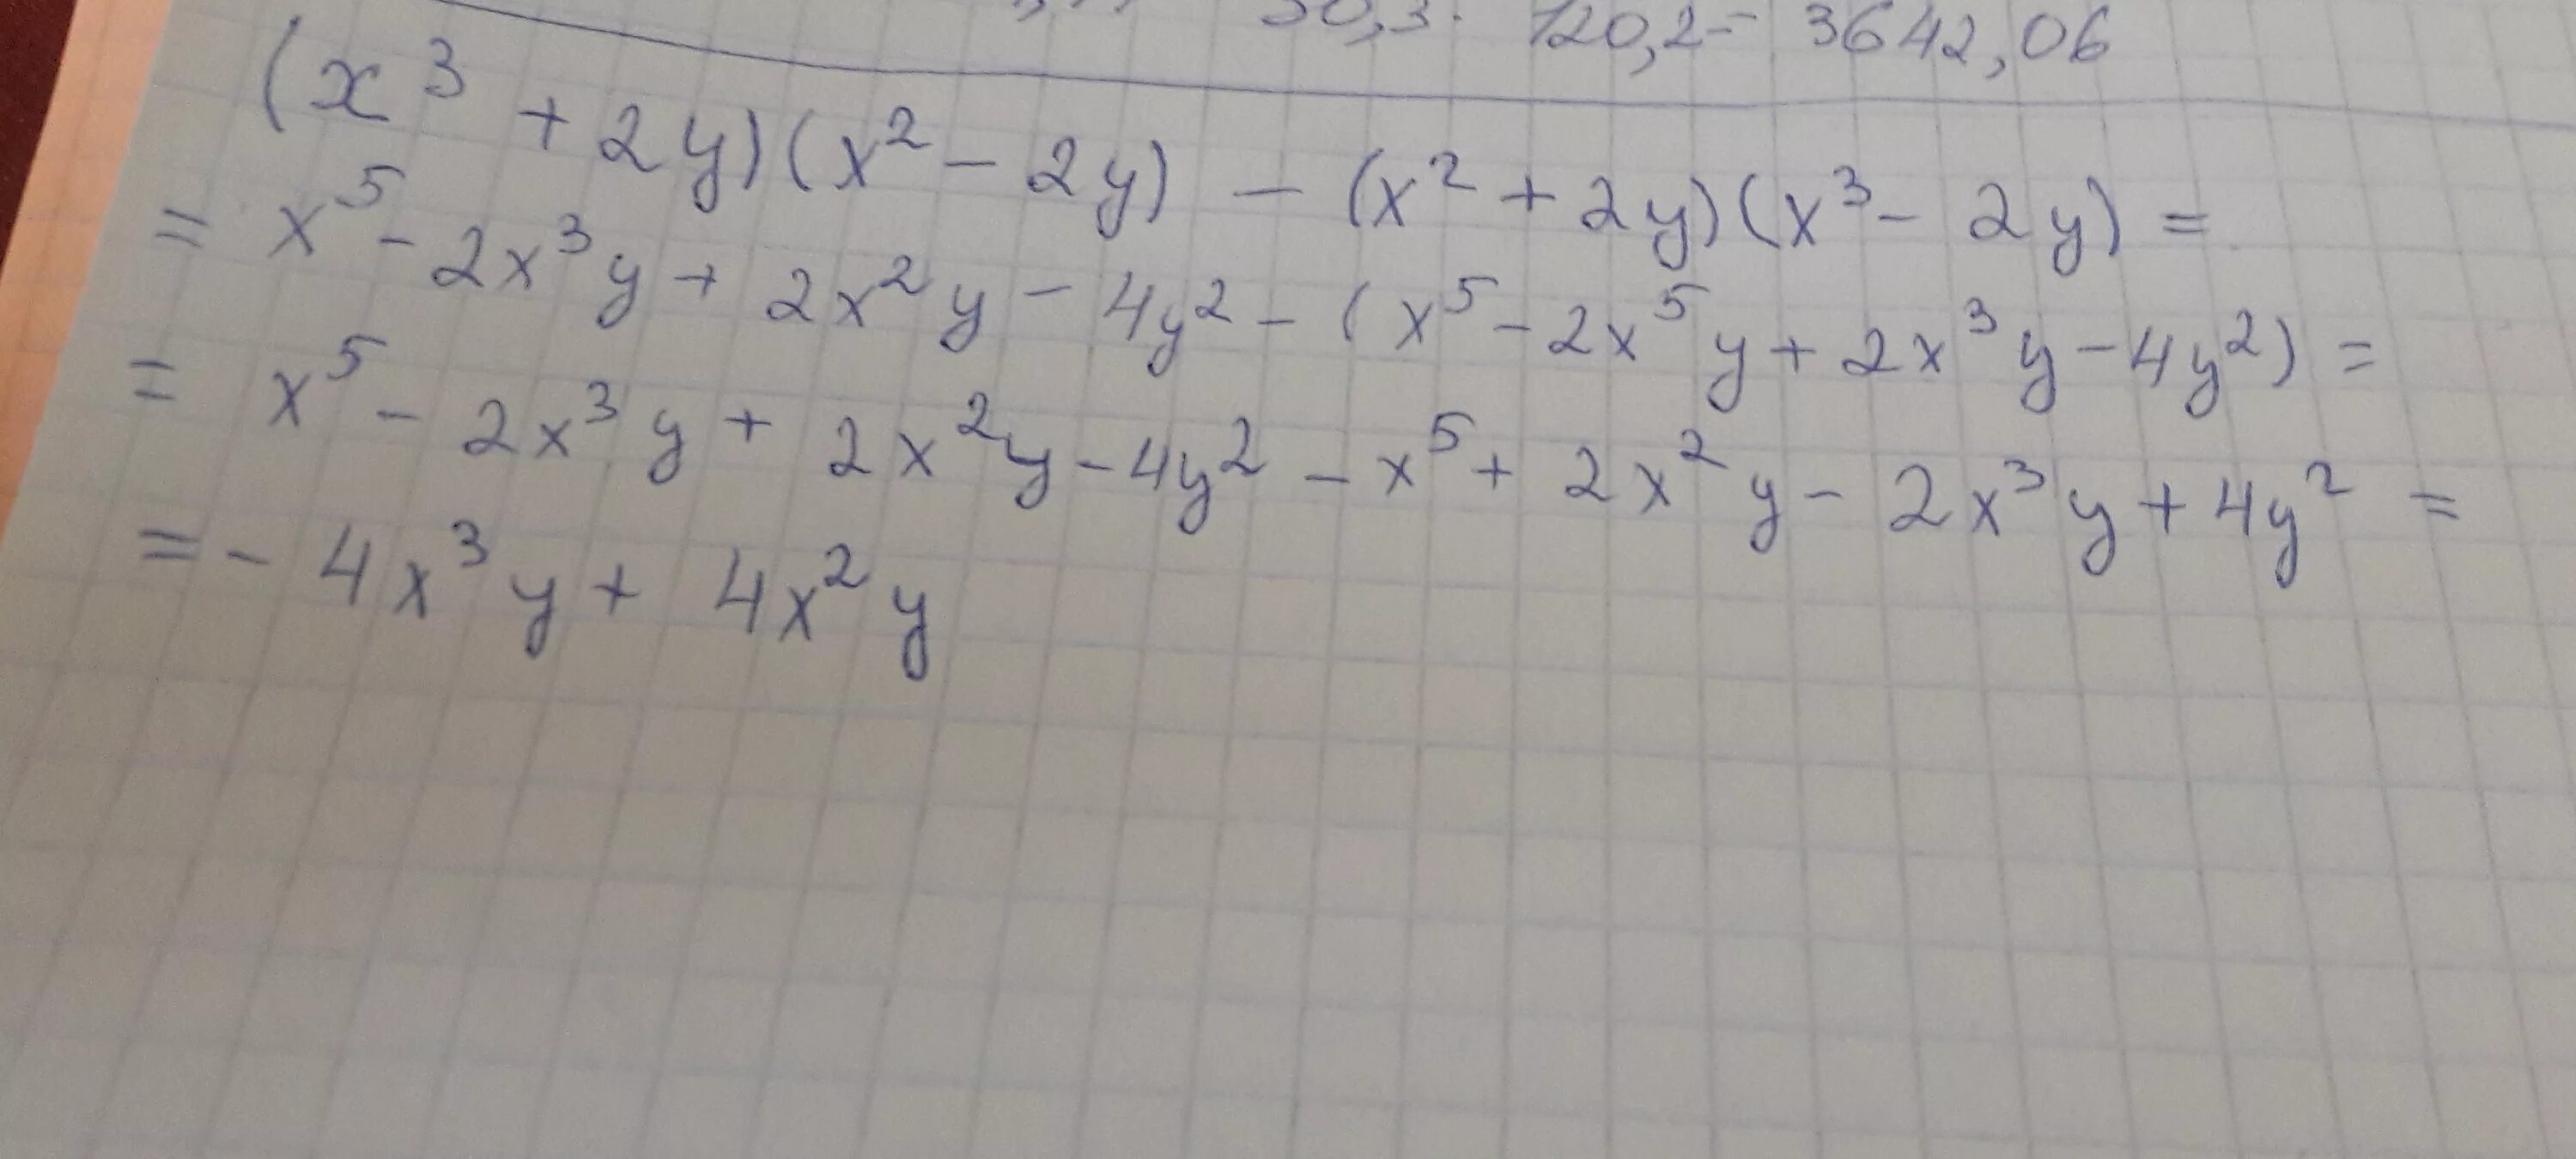 X во второй x в третий. Упростить выражение 2x^2y*x/y. 2(X-3y) -3(x y) упростите выражения. Упростите выражение (x^2-y^2)/(y/x-x/y). Упростите выражение x3/y-2:x2/3y-6.